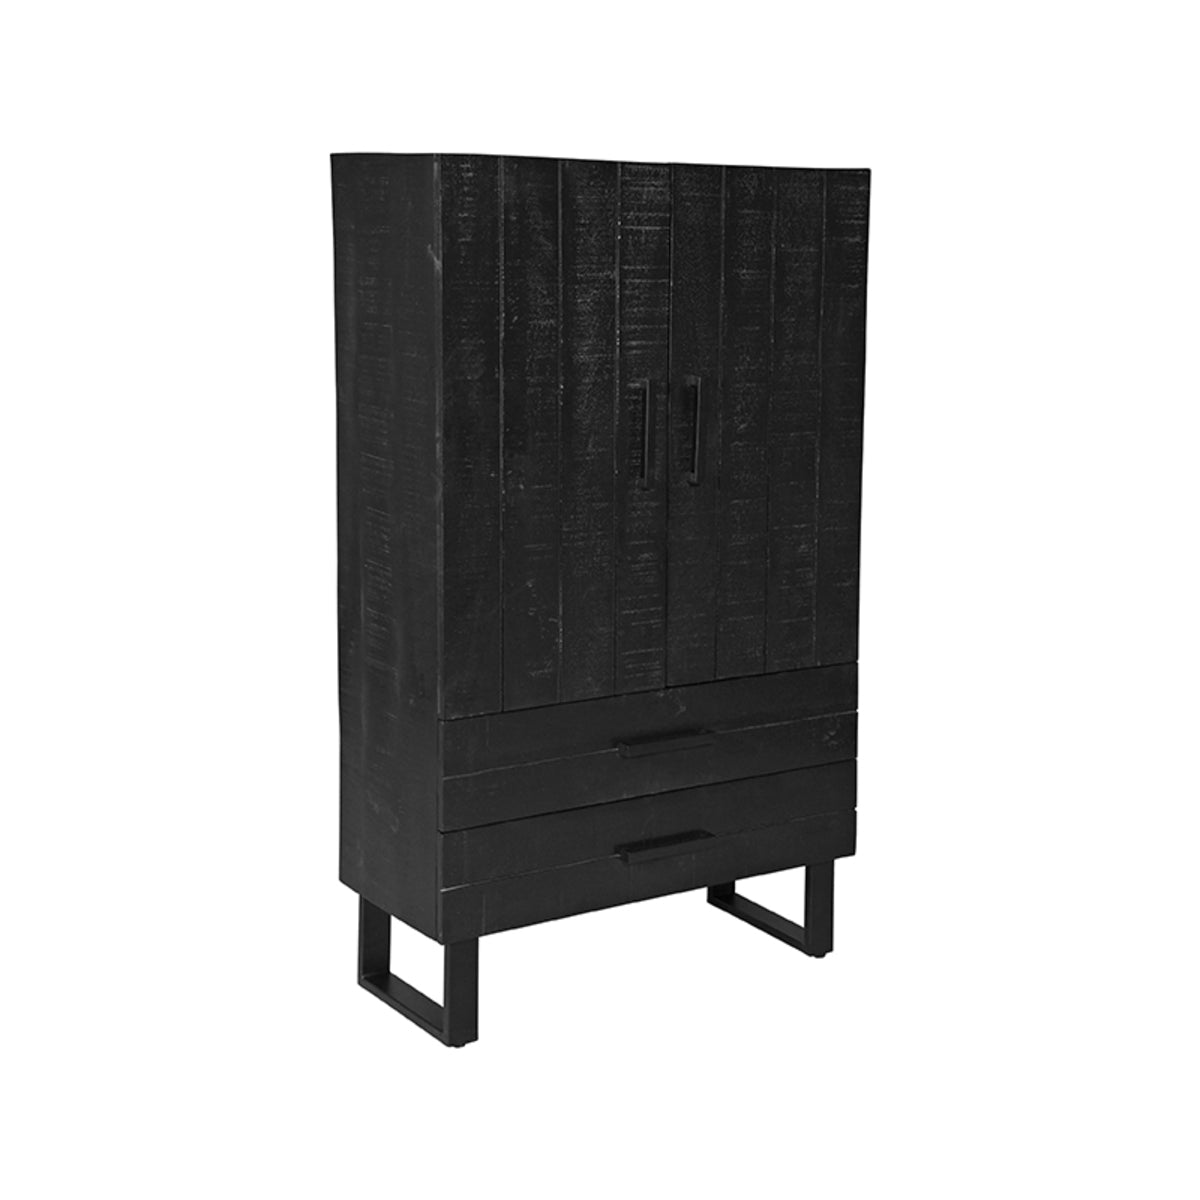 LABEL51 Storage cupboard - Black - Mango wood - 2-Door